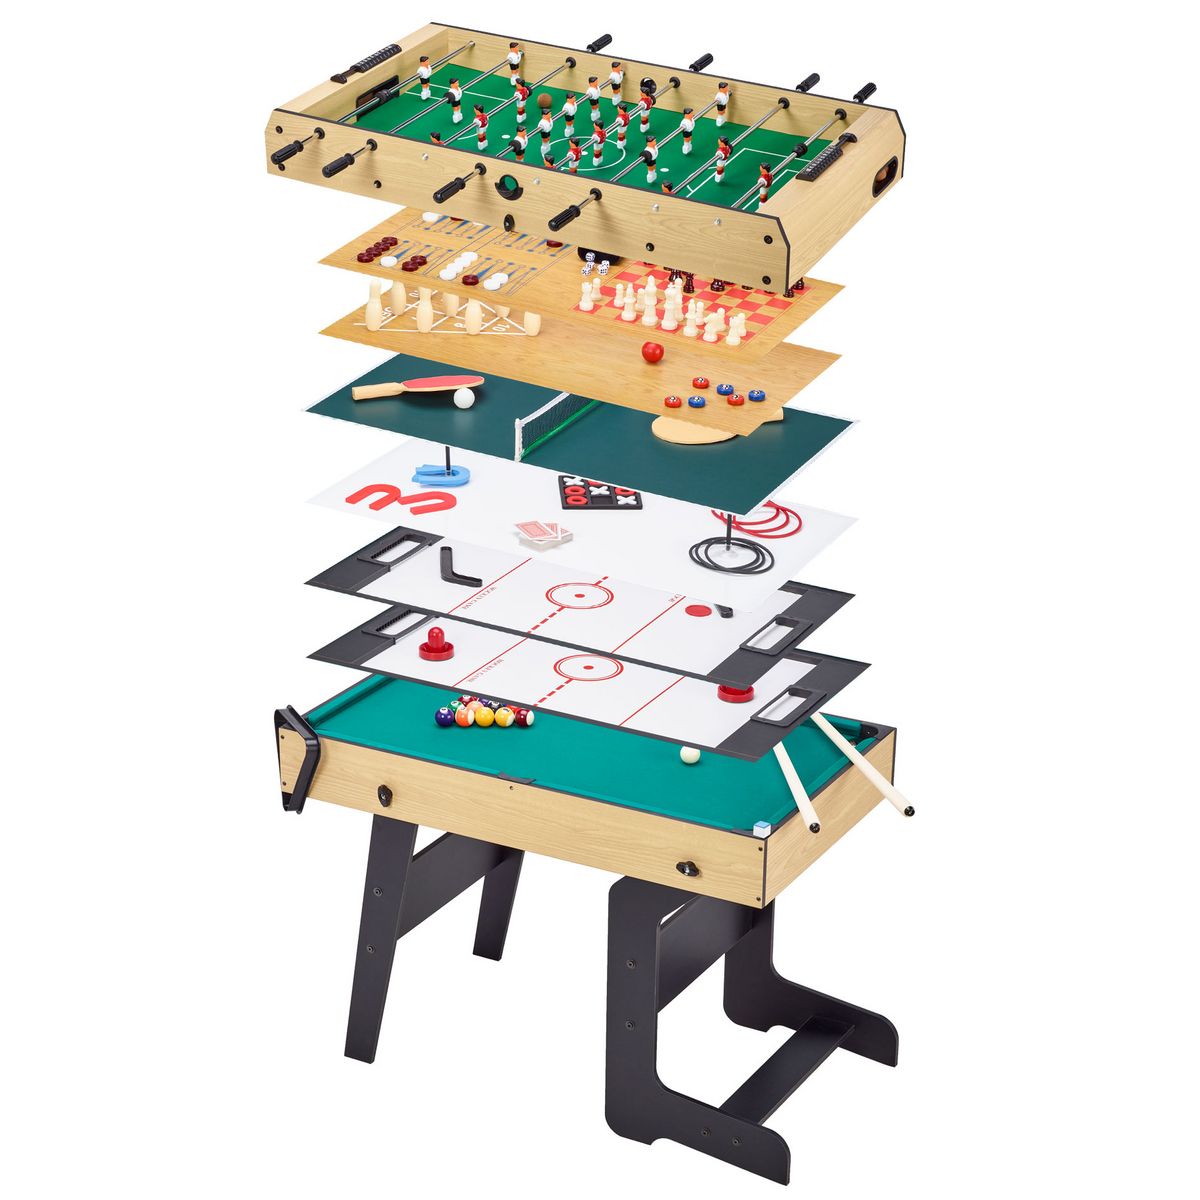 KANGUI Table multi jeux pliable 16 en 1 pour ado - Babyfoot, ping pong, billard, bowling, palets,...